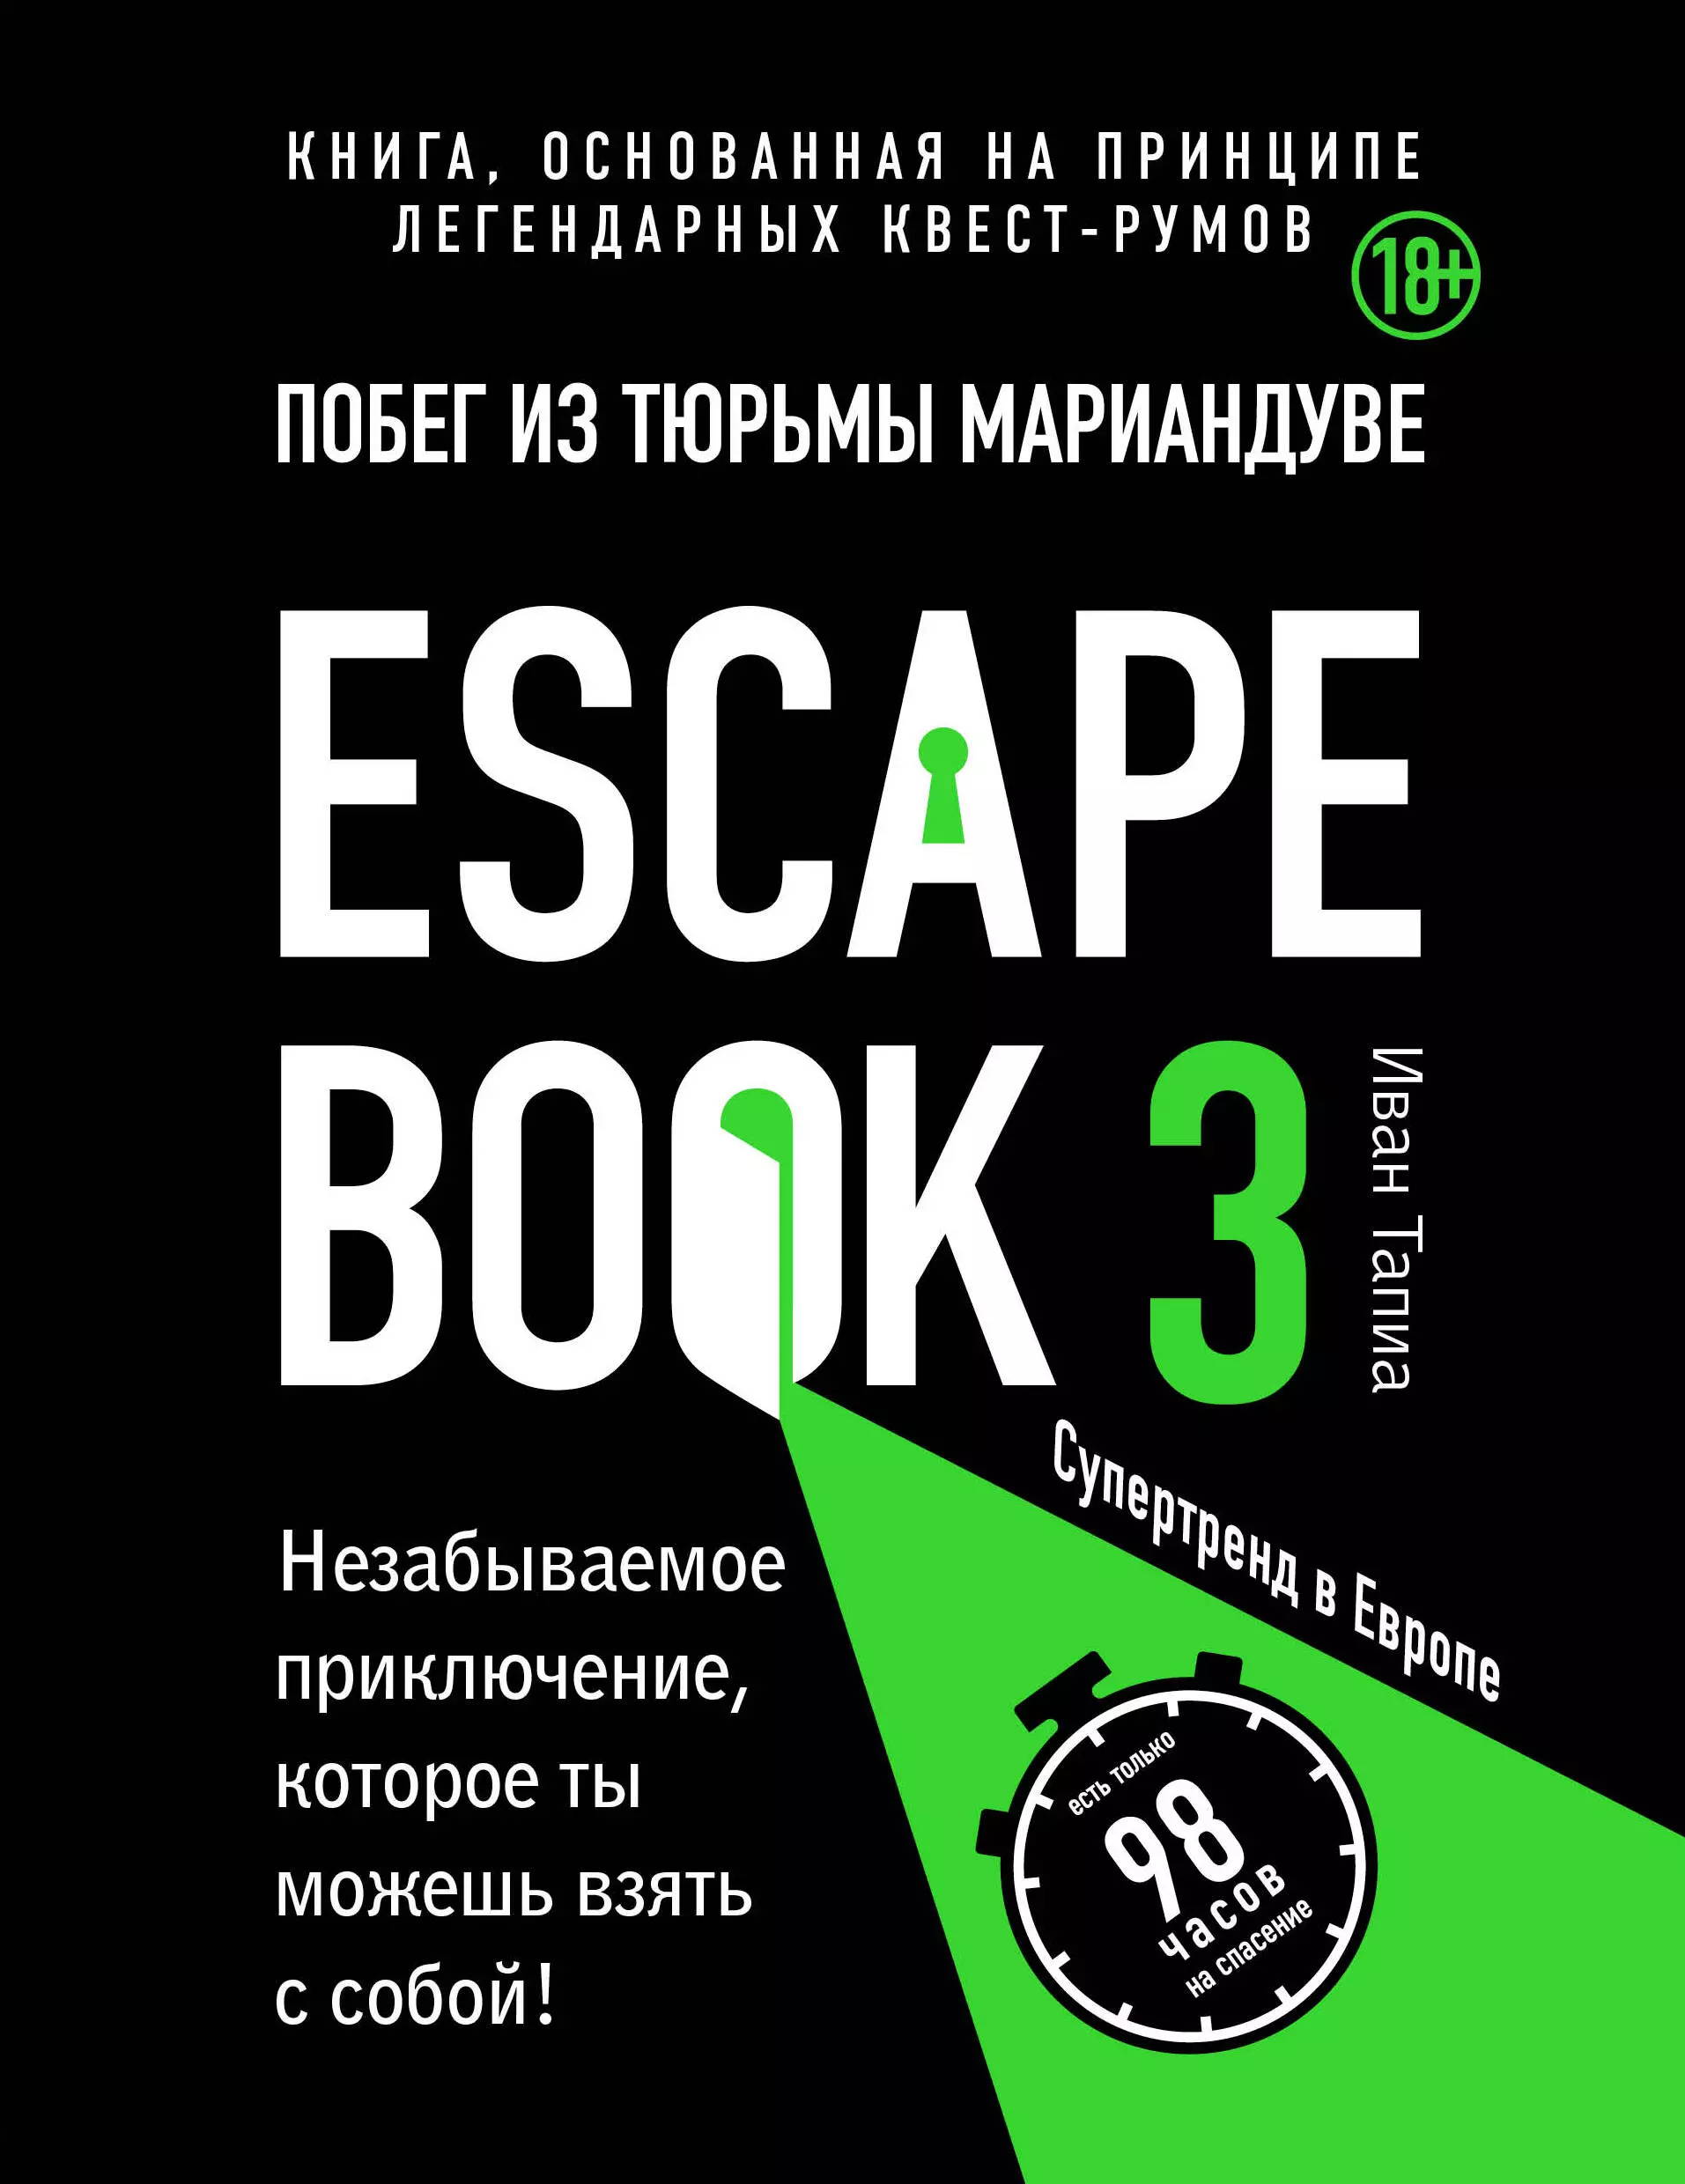 Тапиа Иван - Escape book 3: побег из тюрьмы Мариандуве. Книга, основанная на принципе легендарных квест-румов